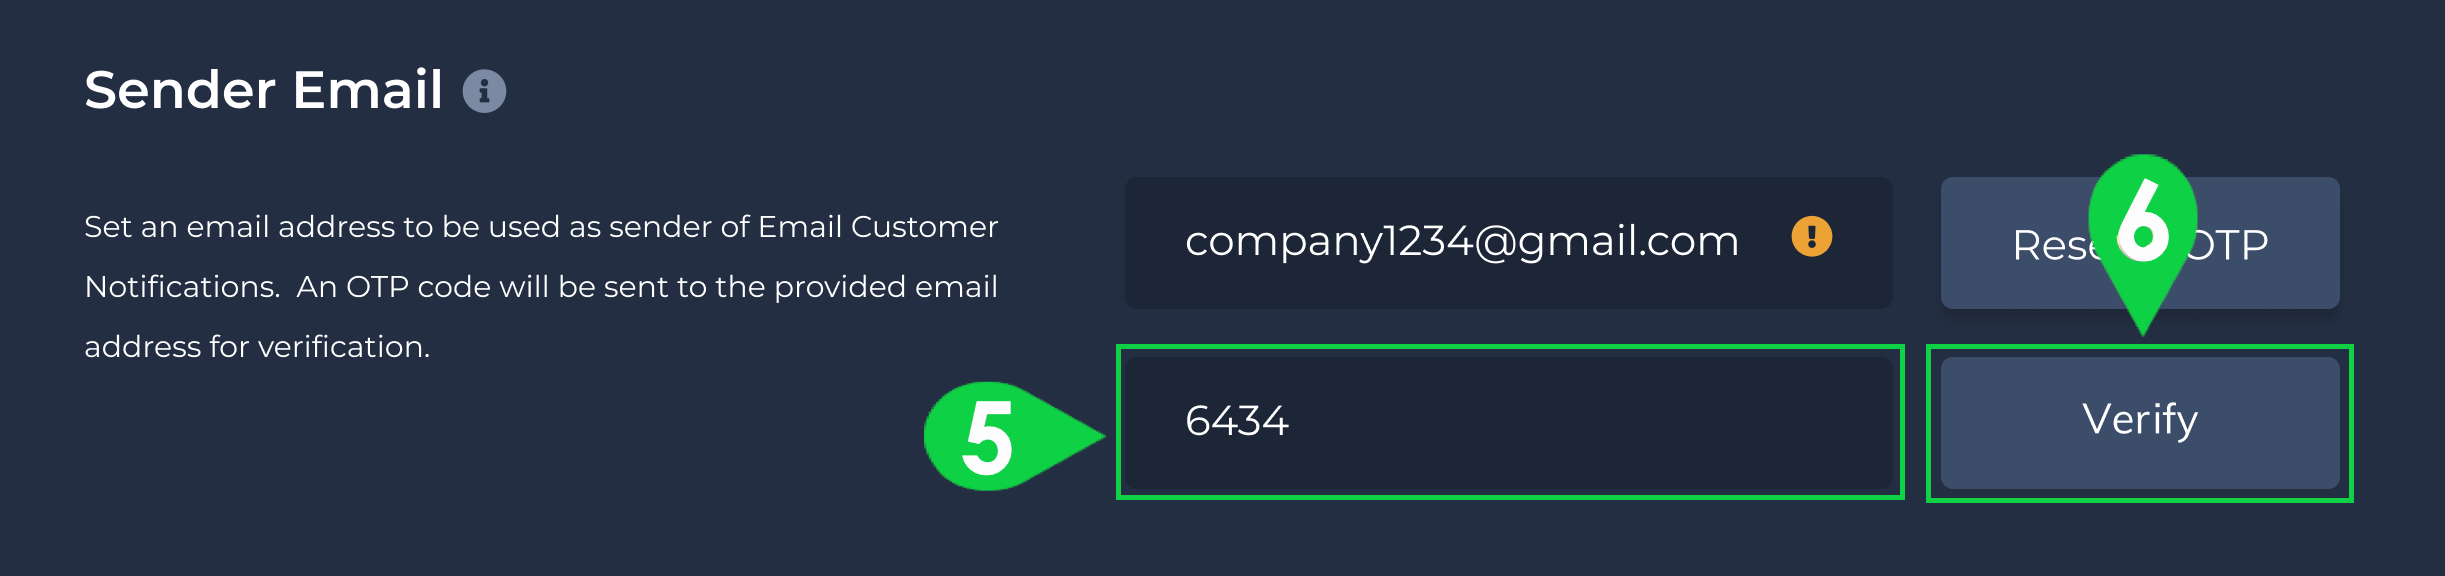 verify sender email - 2